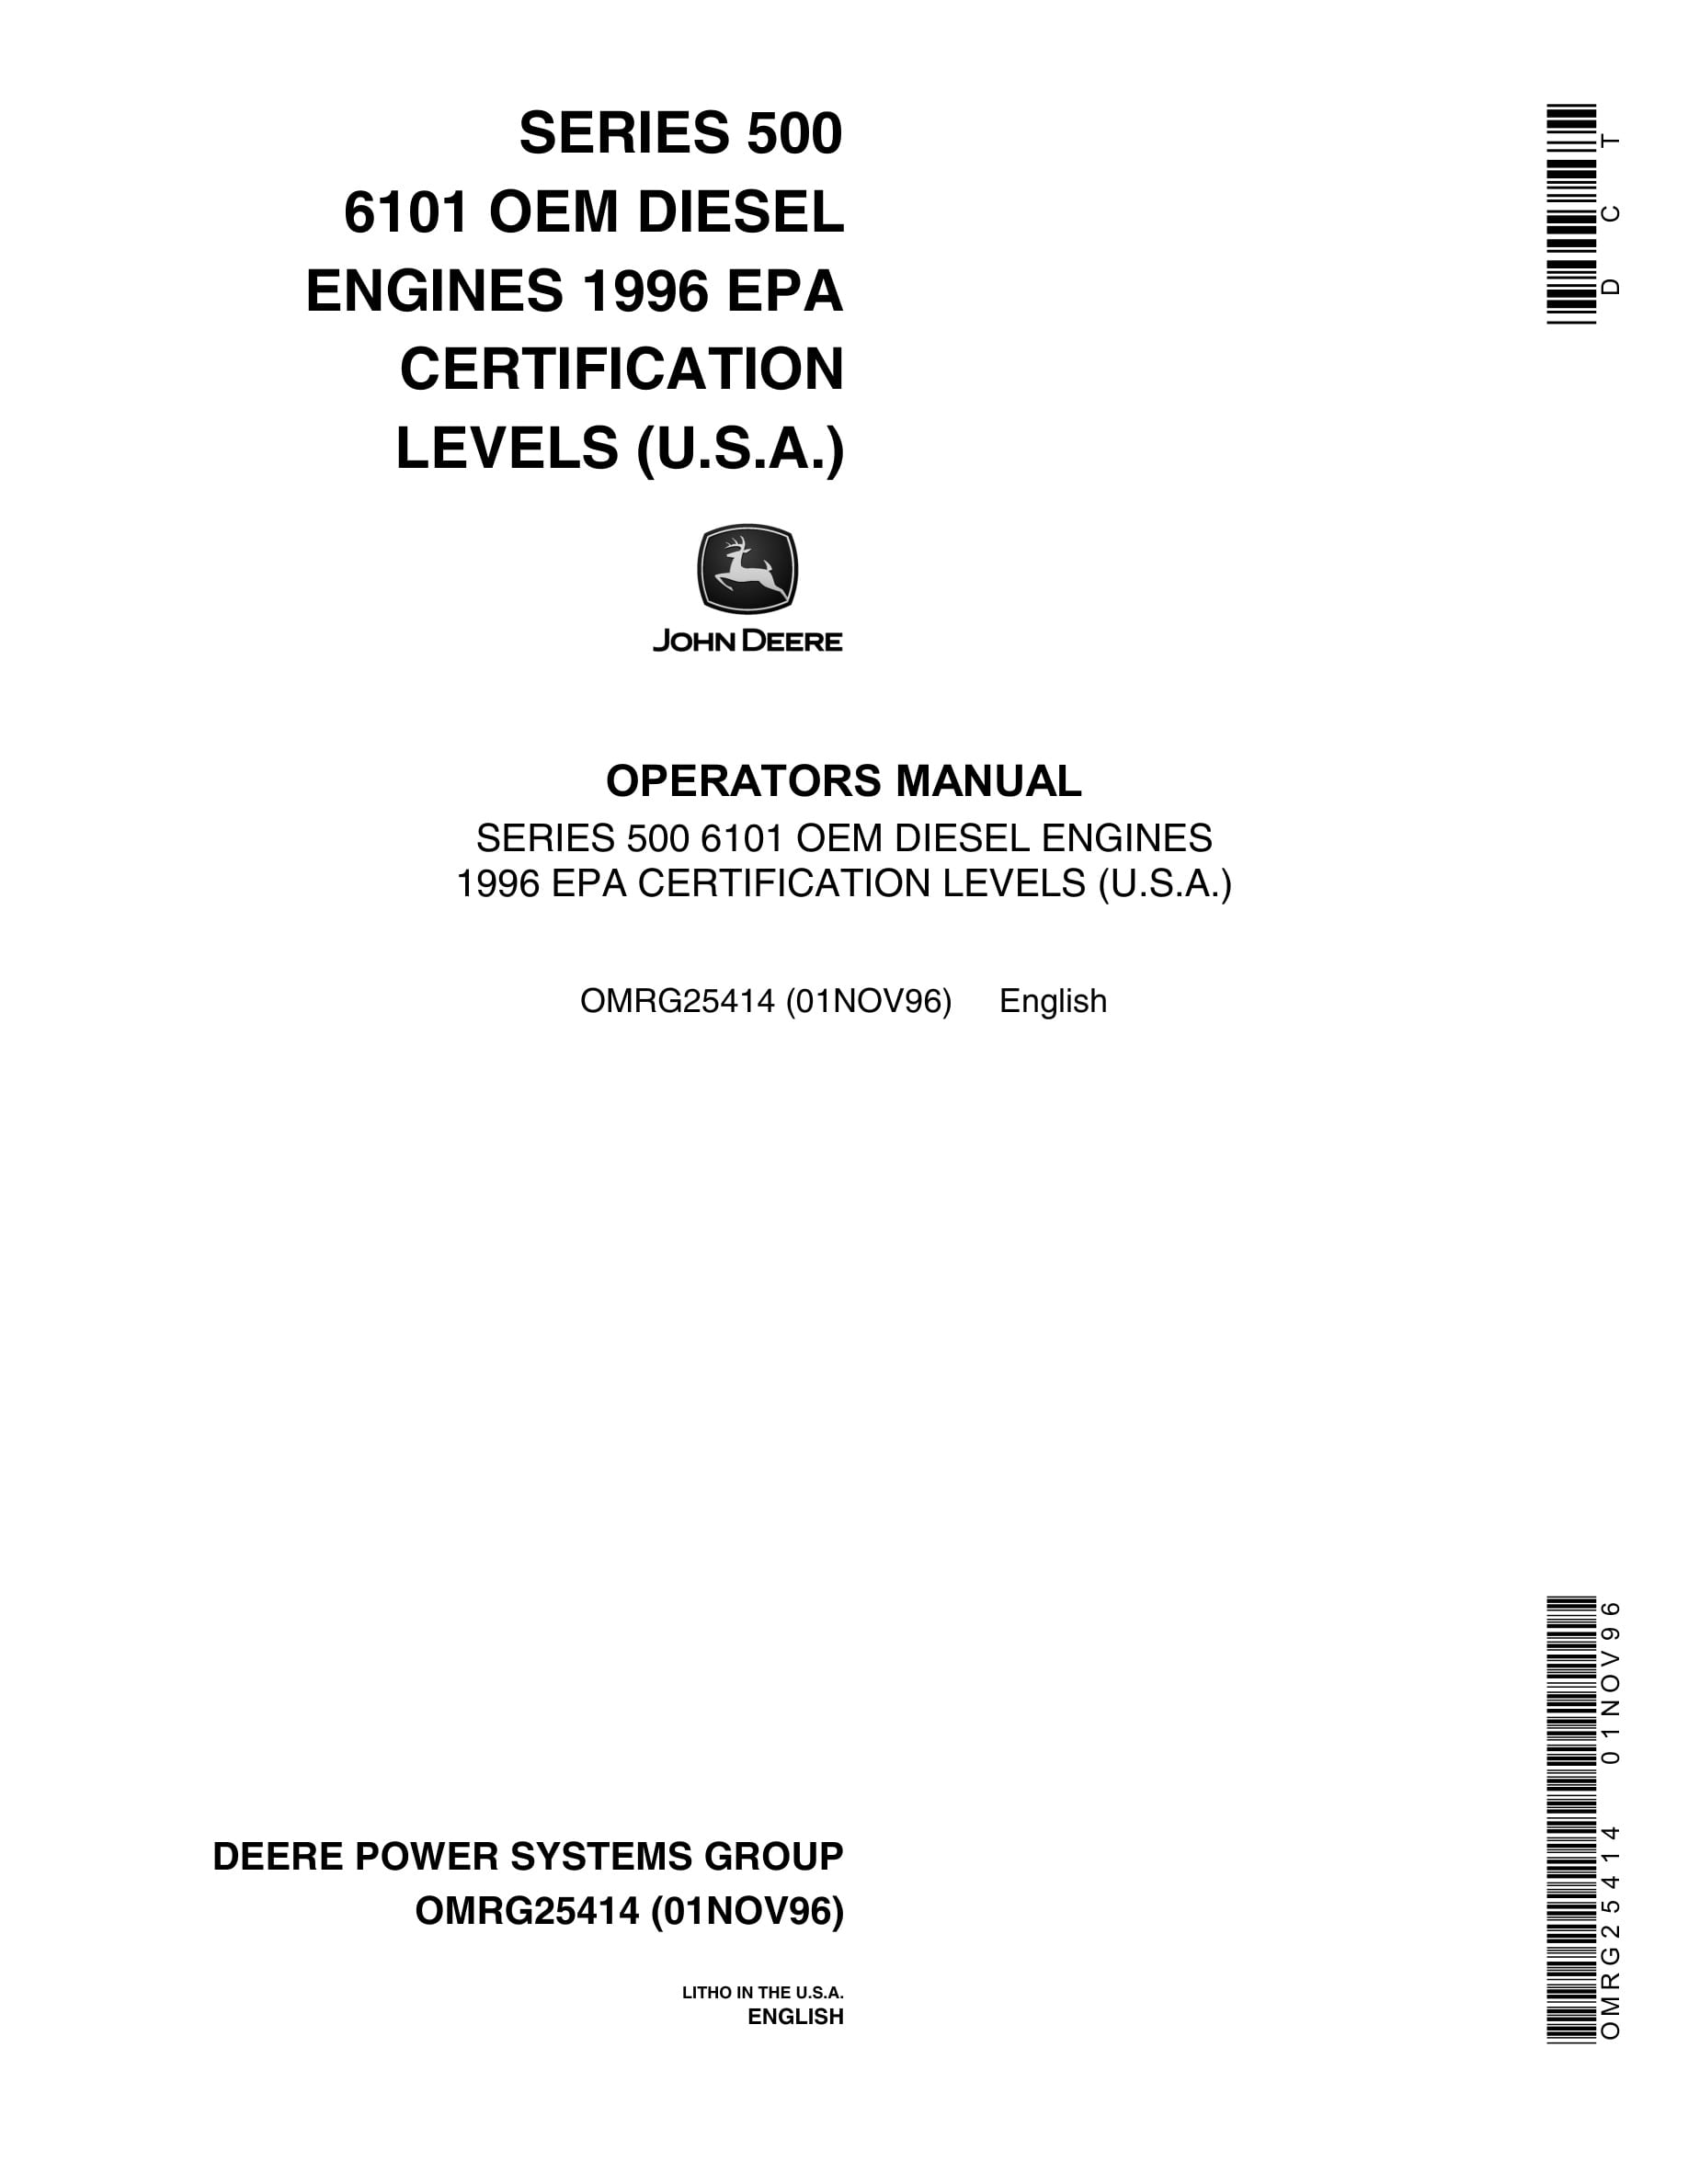 John Deere PowerTech SERIES 500 6101 OEM DIESEL ENGINES Operator Manual OMRG25414-1